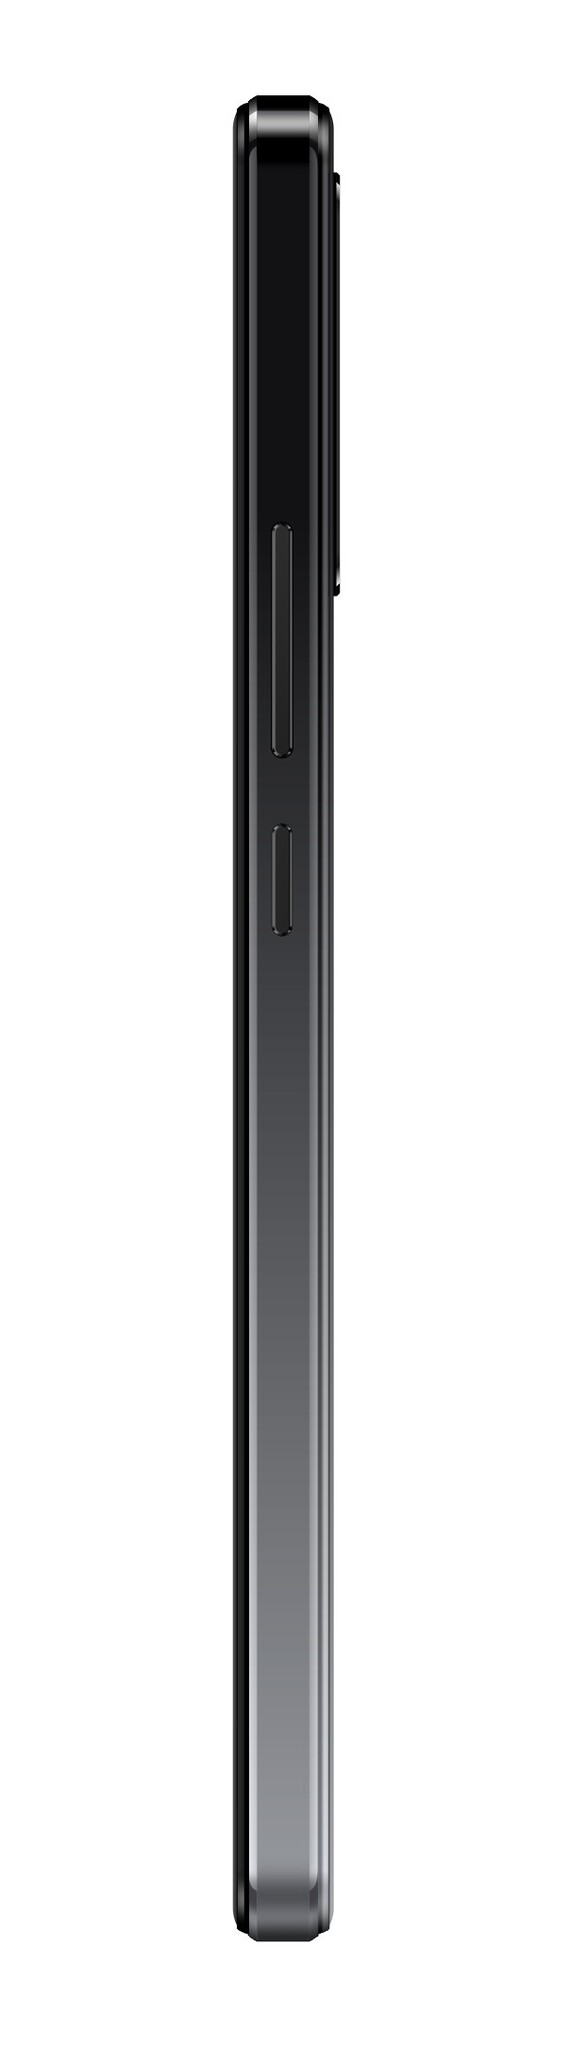 Смартфон Coolpad Cool 10A 3/64Gb, черный